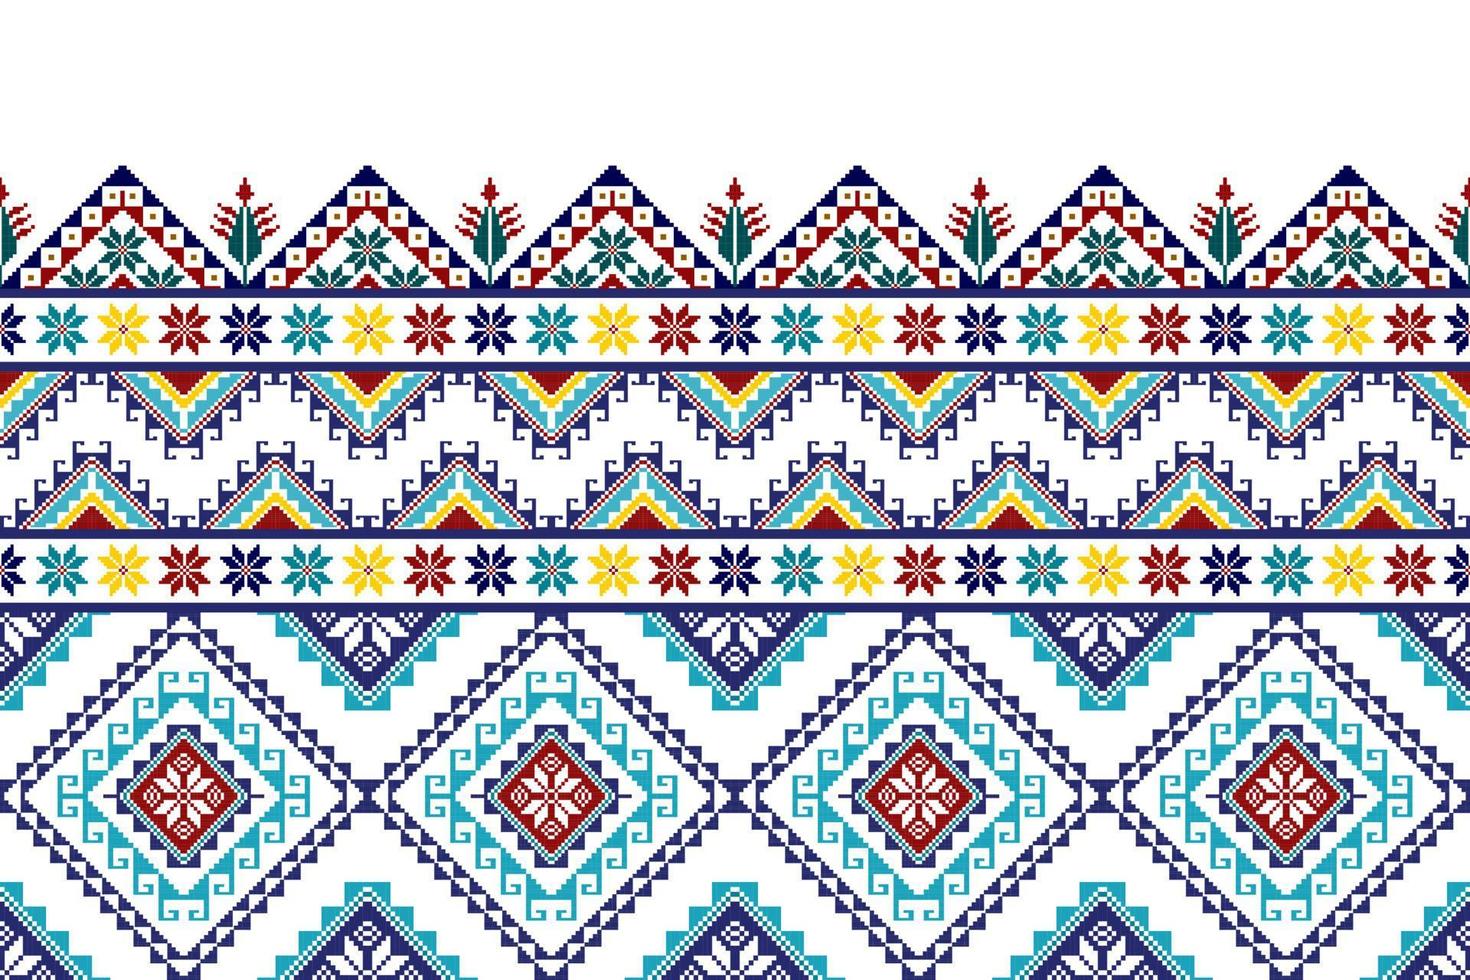 tartreez Palestijns abstract geometrisch etnisch textielpatroonontwerp. Azteekse stof tapijt mandala ornamenten textiel decoraties behang. tribal boho native naadloos textiel traditioneel borduurwerk vector